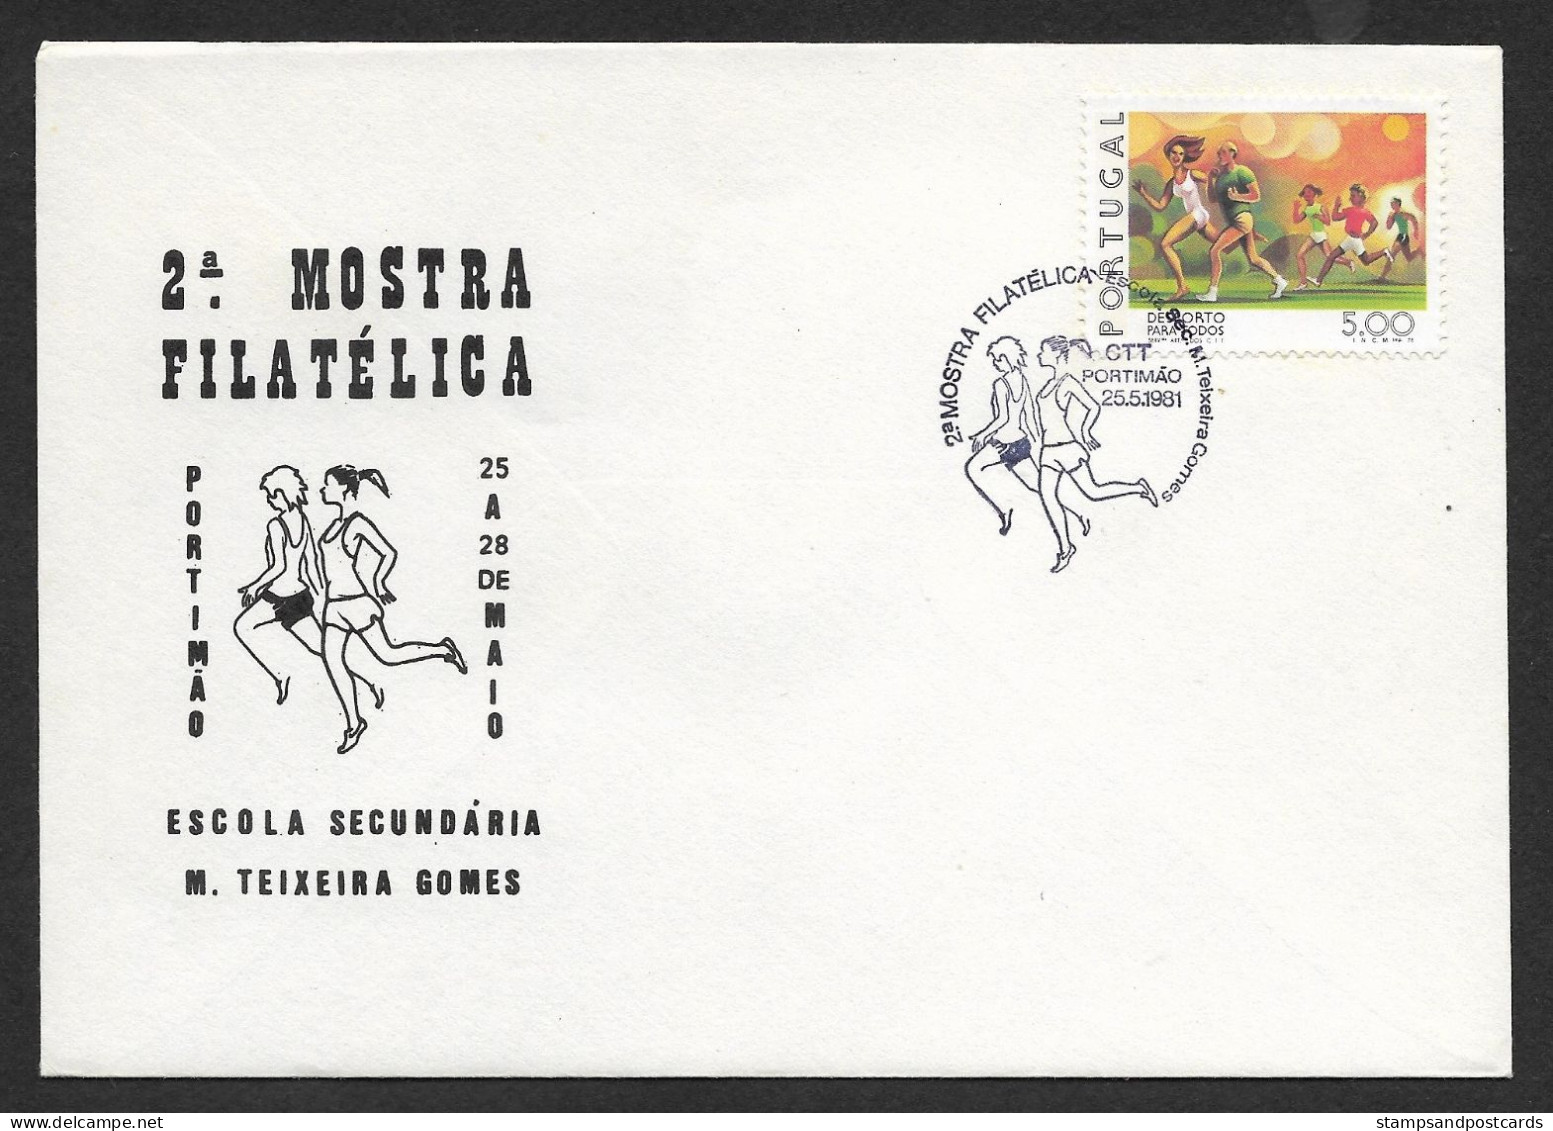 Portugal Cachet Commémoratif Expo Philatelique Lycée Portimão Algarve 1981 High School Stamp Expo Event Pmk - Maschinenstempel (Werbestempel)